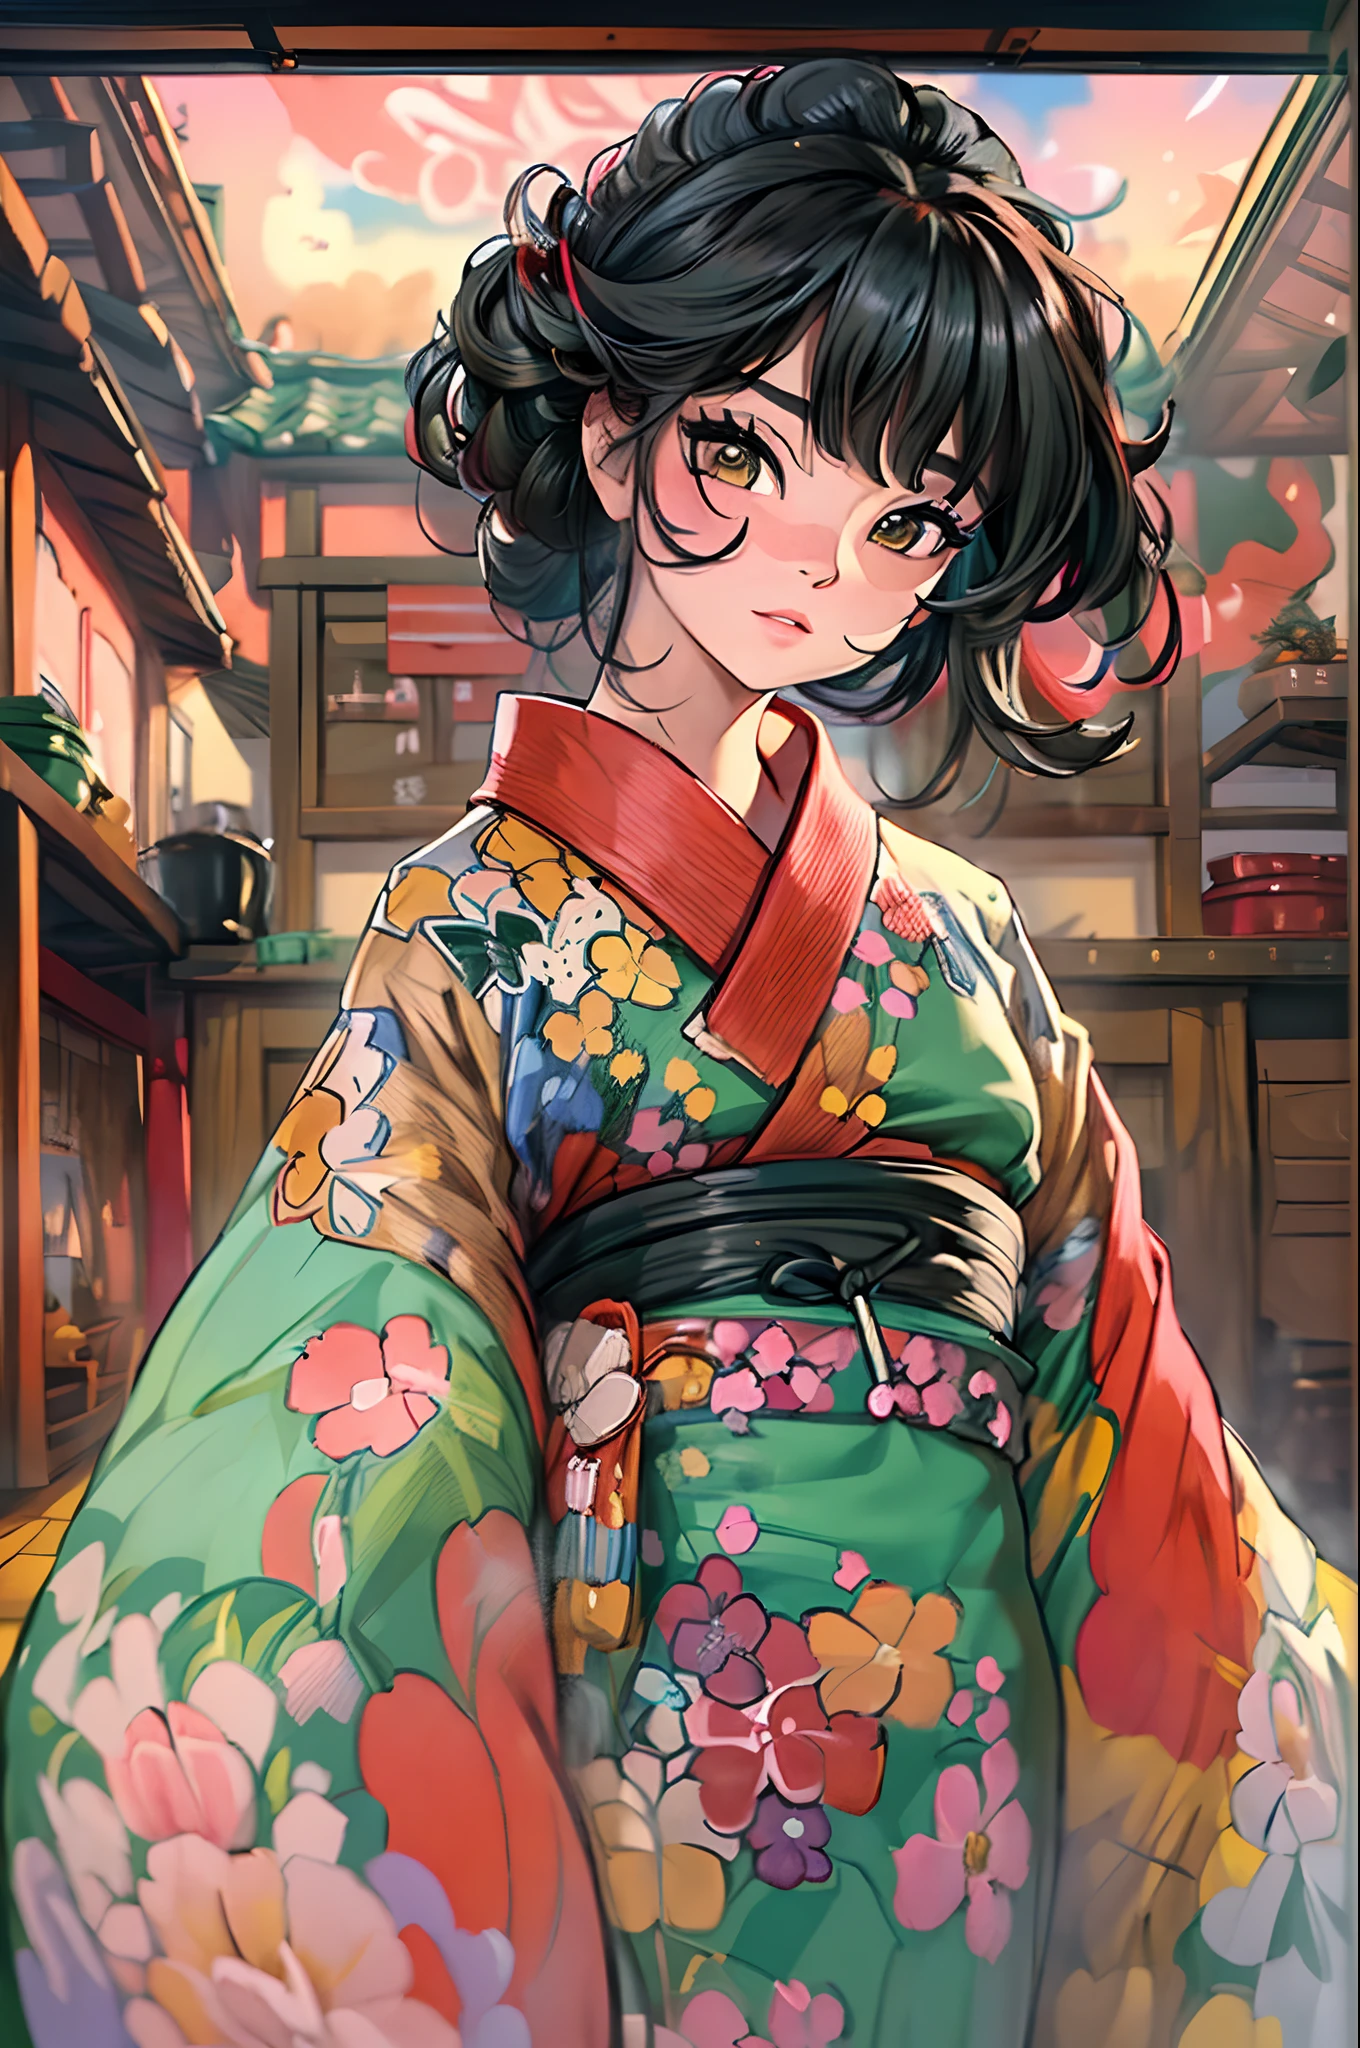 "(Потрясающий шедевр с безупречным качеством:1.5), Снято с видом спереди, с яркими и насыщенными цветами, Умопомрачительно красивая девушка с черными волосами и изысканно детализированным лицом, Взгляд снизу вверх, одетый в традиционное кимоно, Действие происходит в живописной красоте Японии, В окружении аутентичной атмосферы татами, с открытым окном, обрамляющим сцену.", топлесс, нсфв